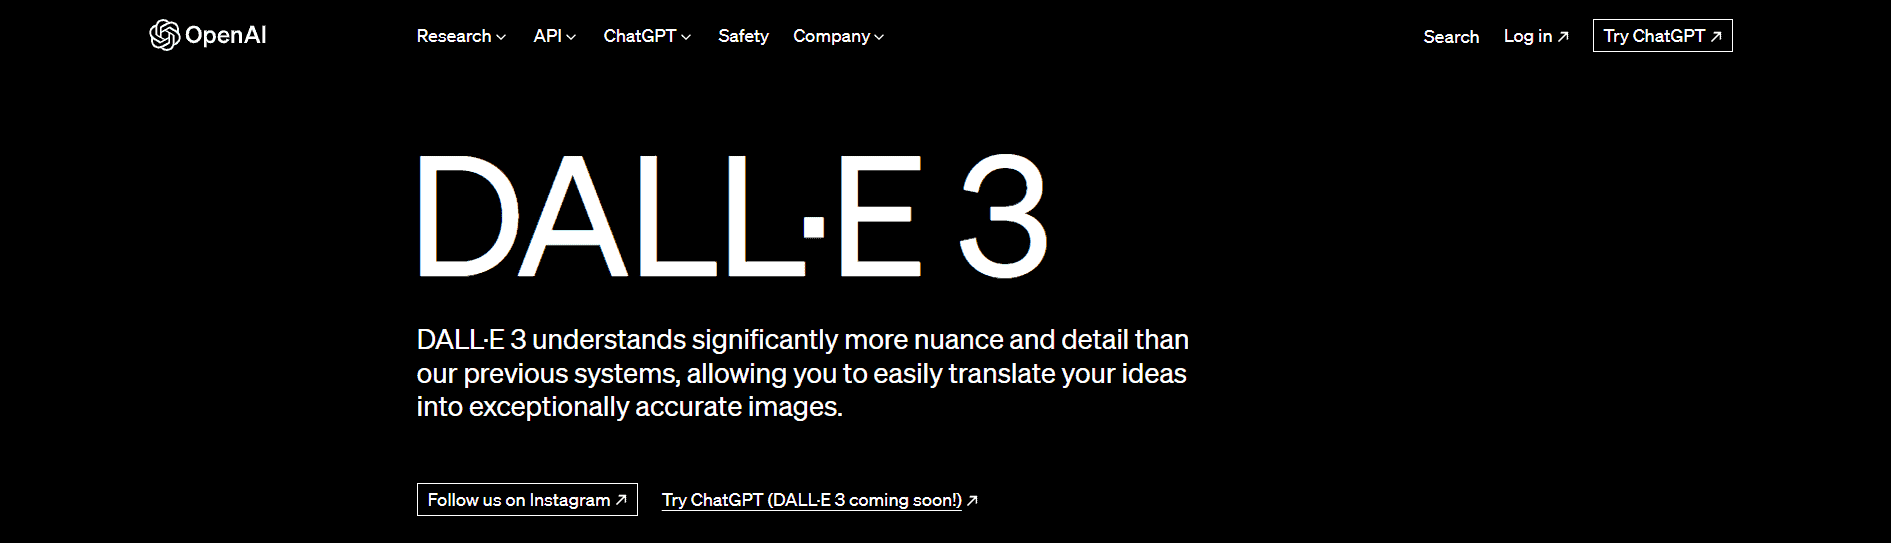 DALL-E 3 Landing Page